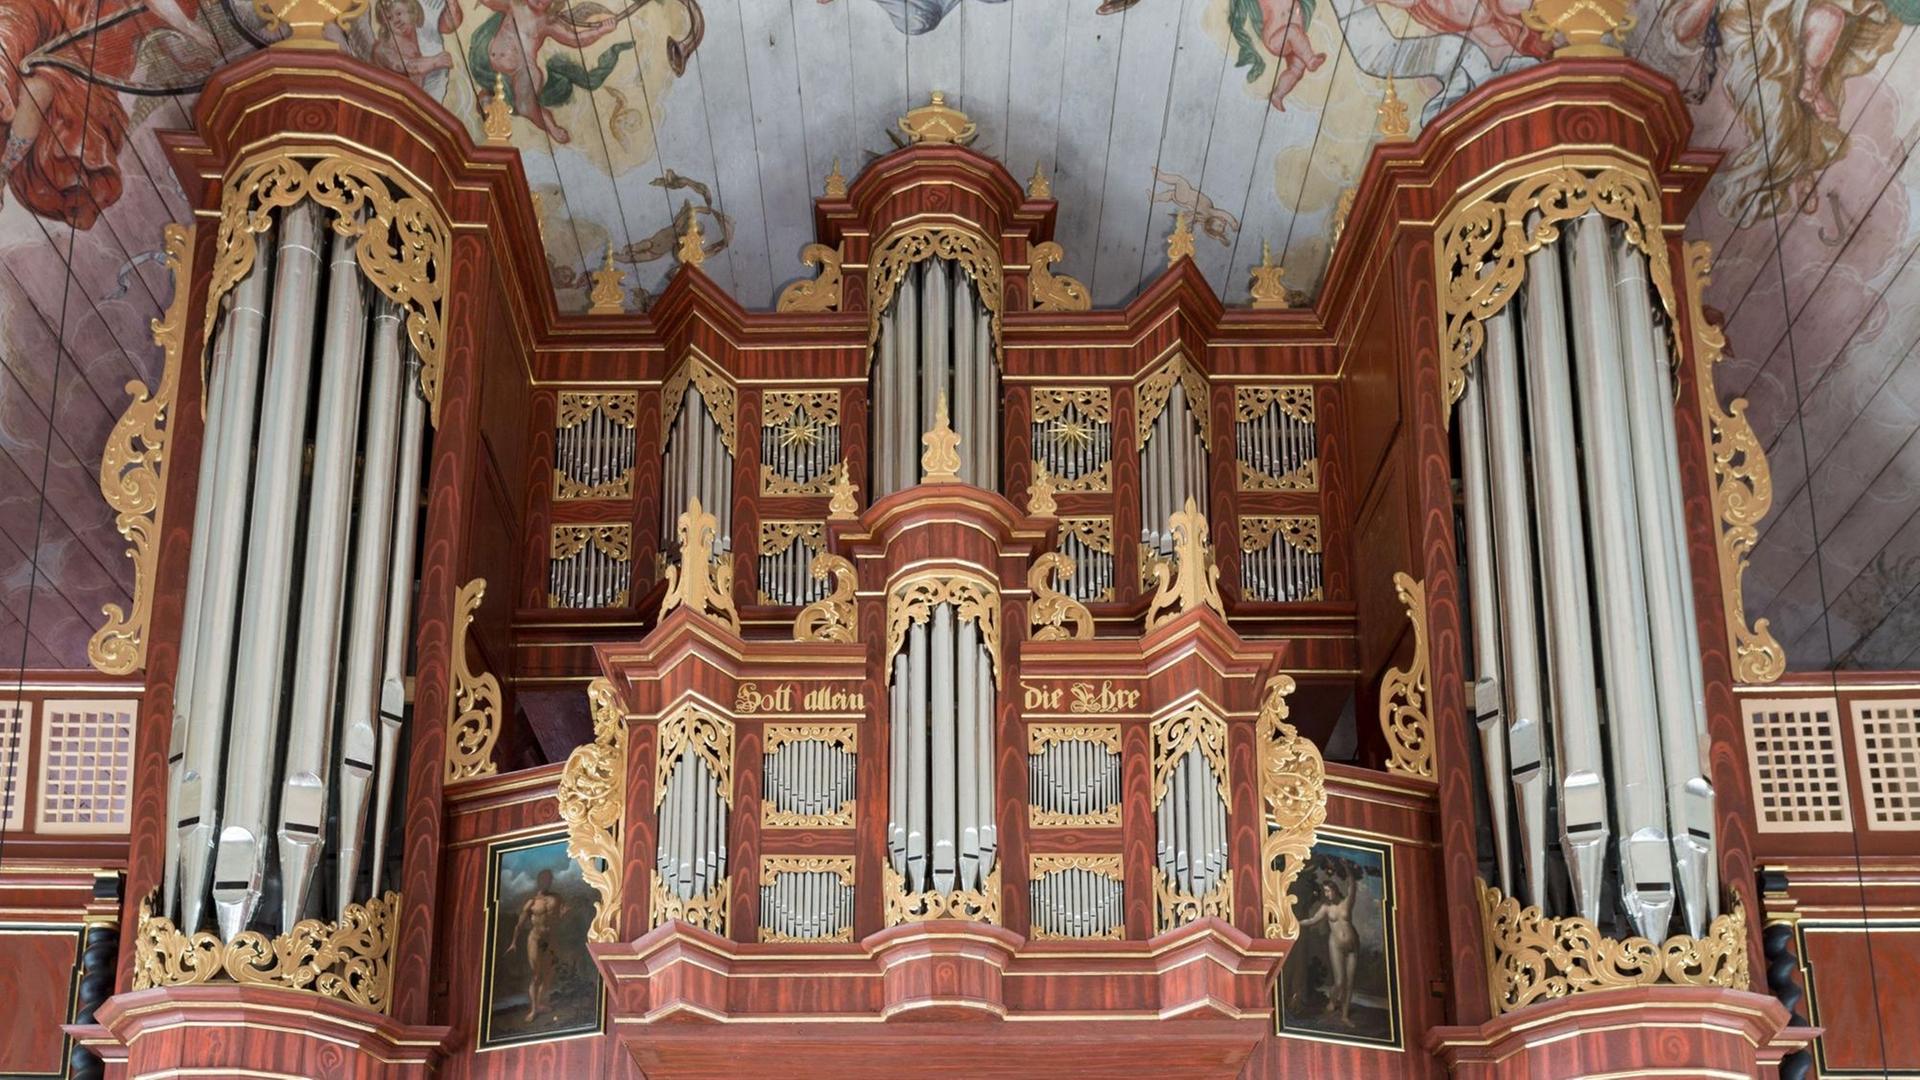 Die Arp Schnitger-Orgel in der St. Pankratius-Kirche in Hamburg-Neuenfelde wurde aufwändig restauriert. Zu sehen ist der Orgelprospekt.